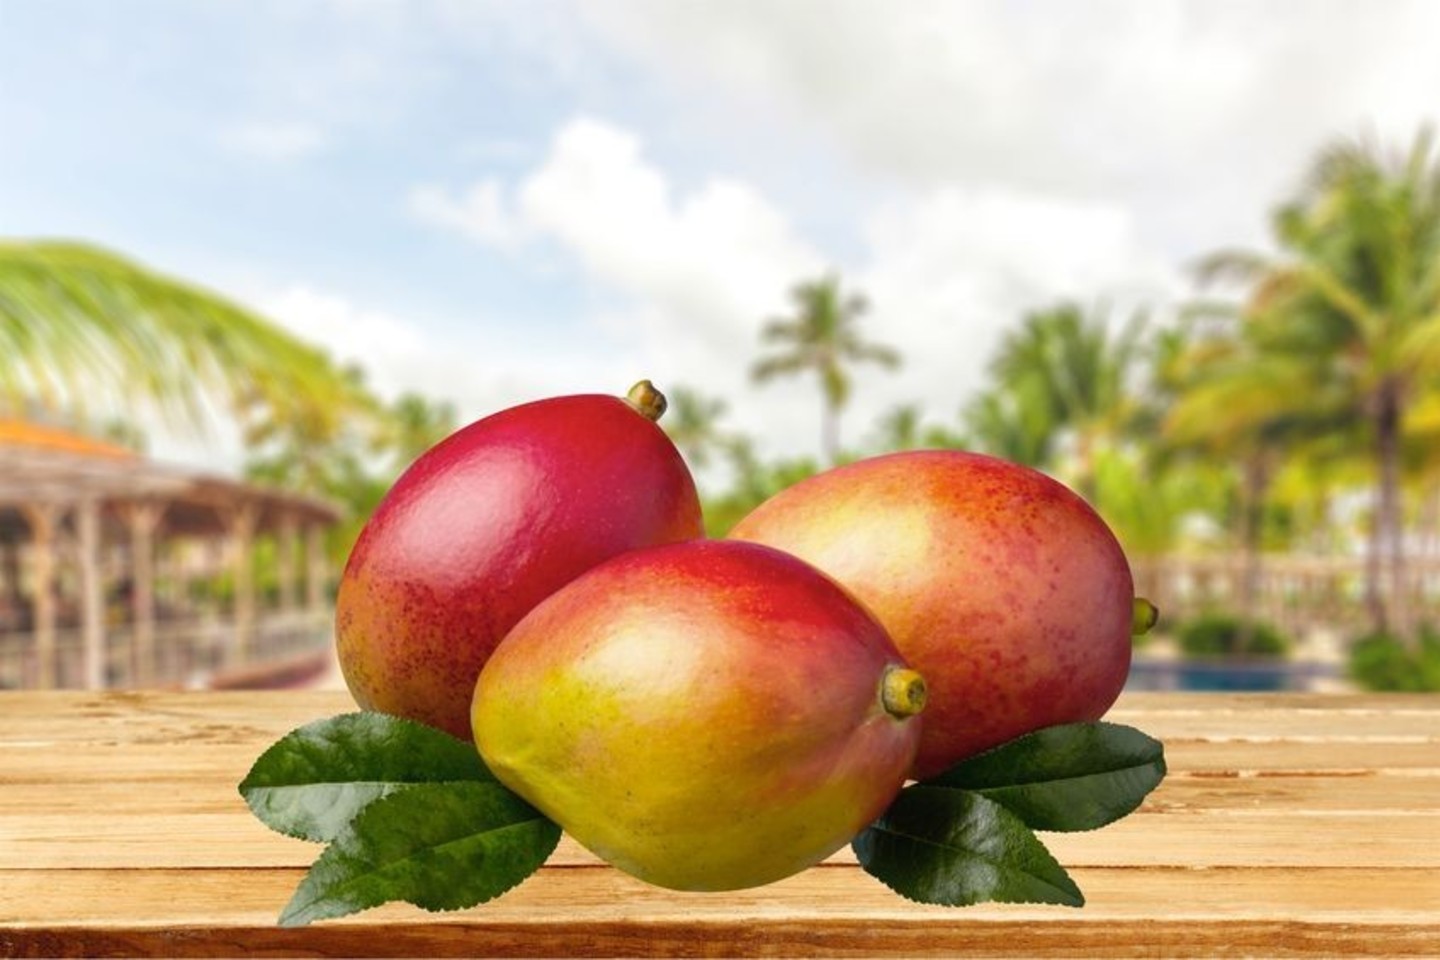 Pasaulyje galima rasti daugiau nei 100 mango vaisiaus rūšių, o jį užauginti trunka net apie 140 dienų.<br>123rf nuotr.